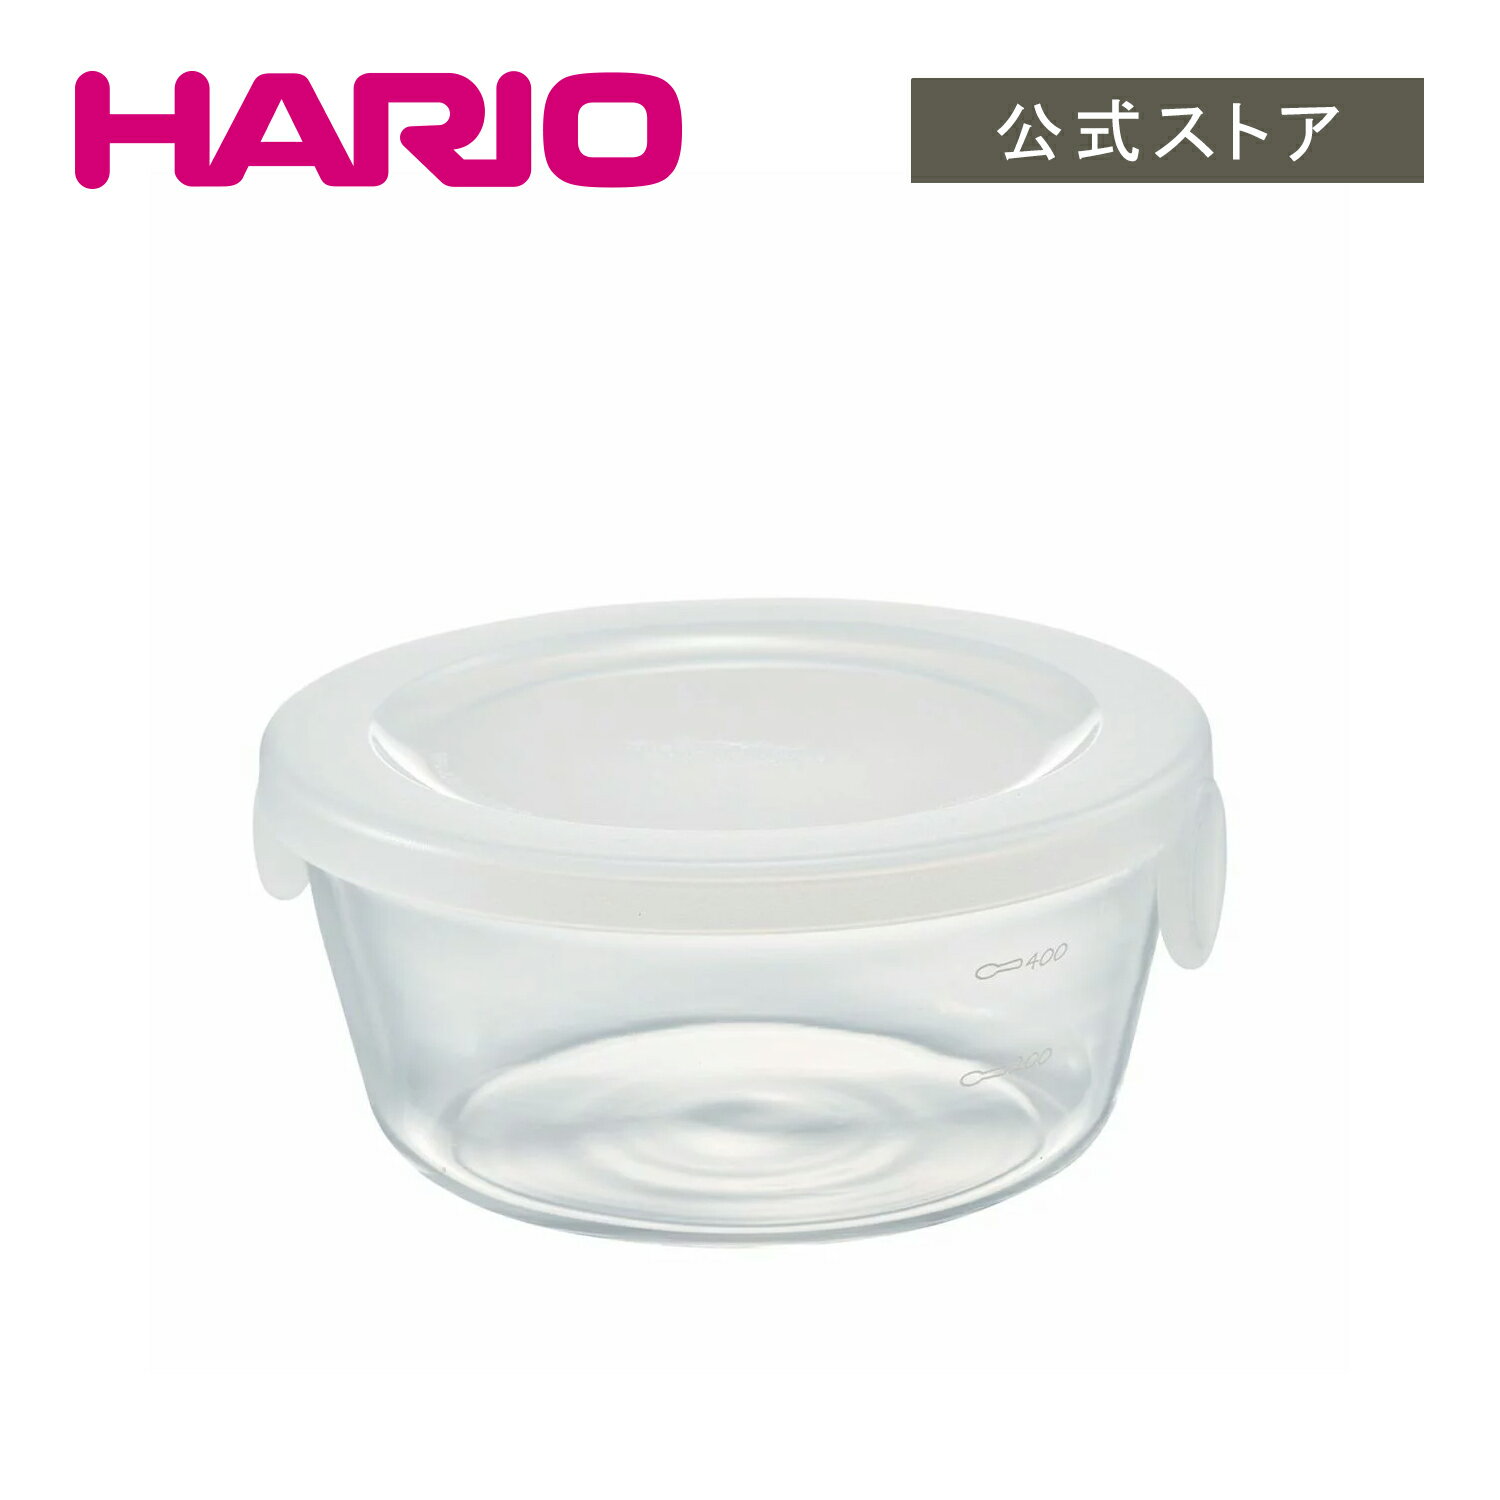 HARIO 耐熱ガラス製保存容器・丸600